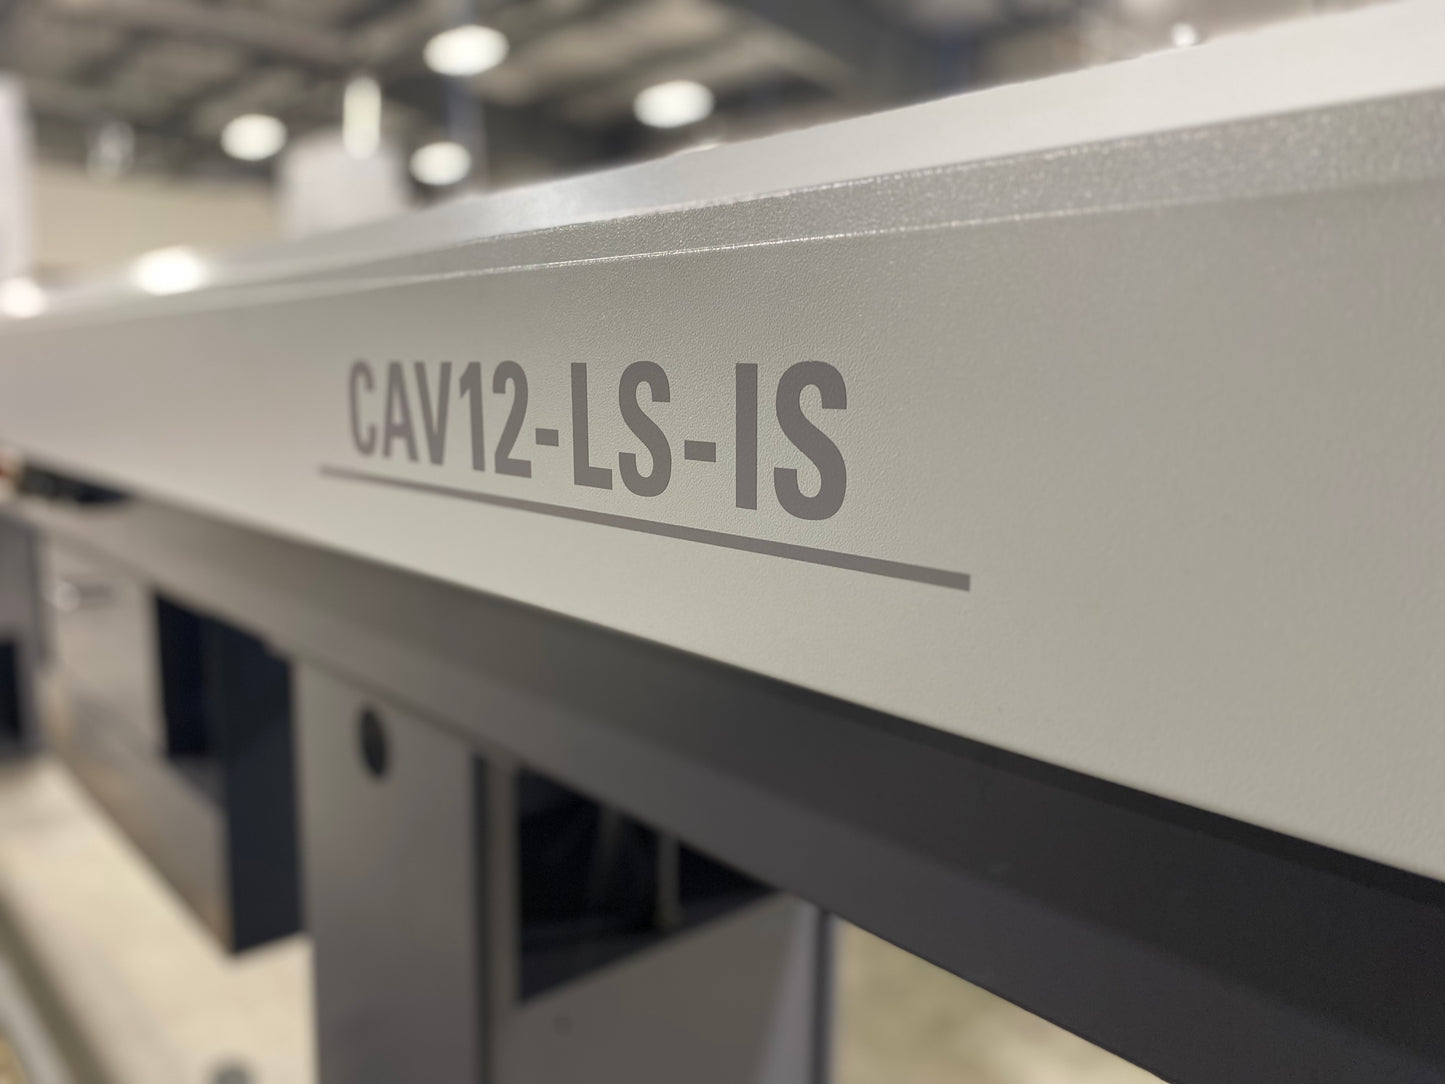 CAV-MAX - CITIZEN CAV12-LS-IS INCREASED BAR CAPACITY SYSTEM